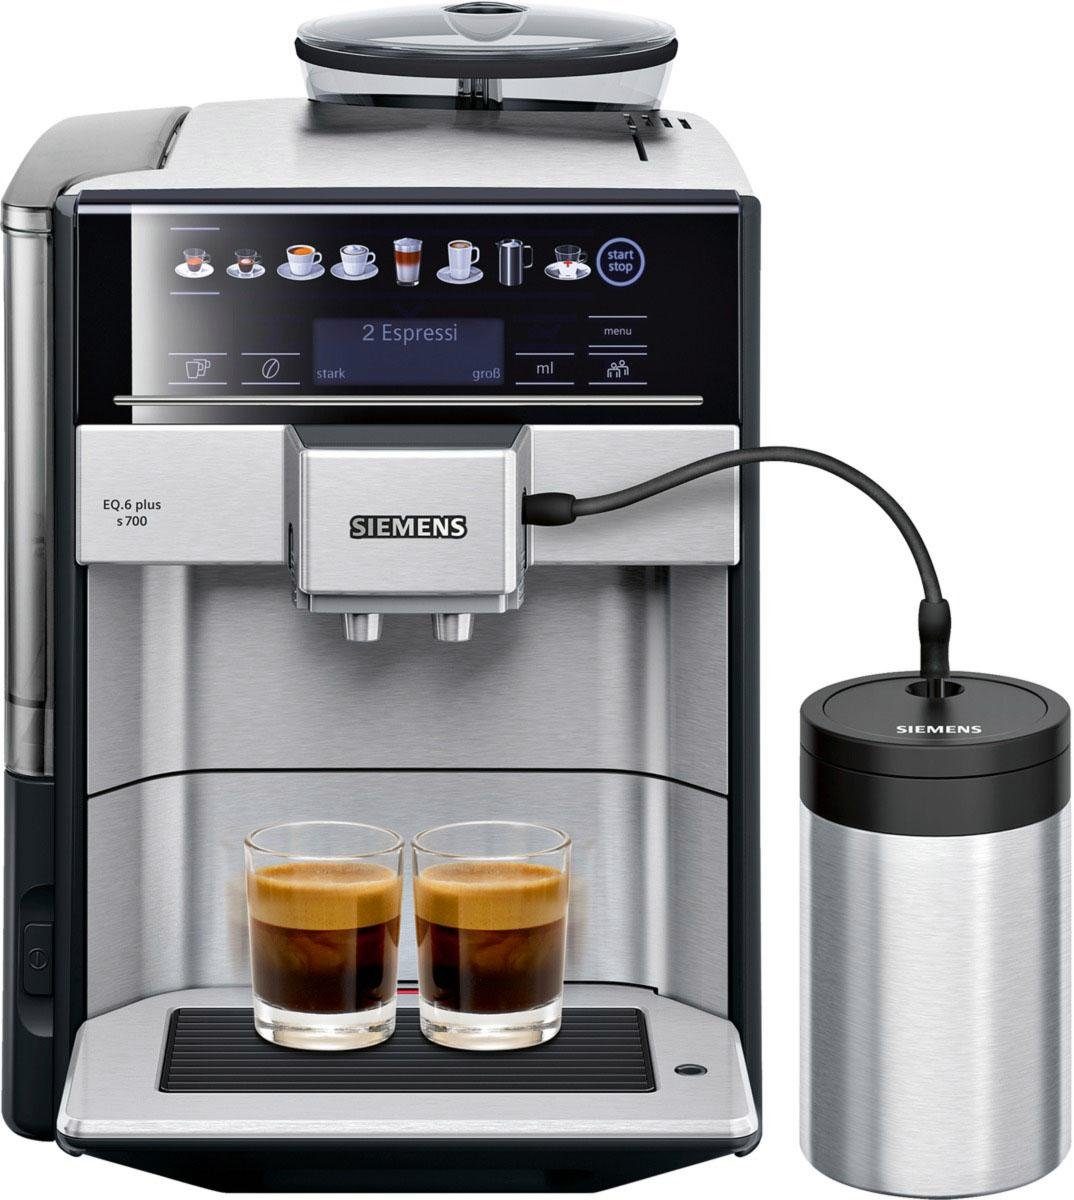 SIEMENS Kaffeevollautomat EQ6 plus s700 TE657M03DE, viele Kaffeespezialitäten, Doppeltassenfunk, Edelstahl-Milchbehälter, automatische Dampfreinigung, edelstahl